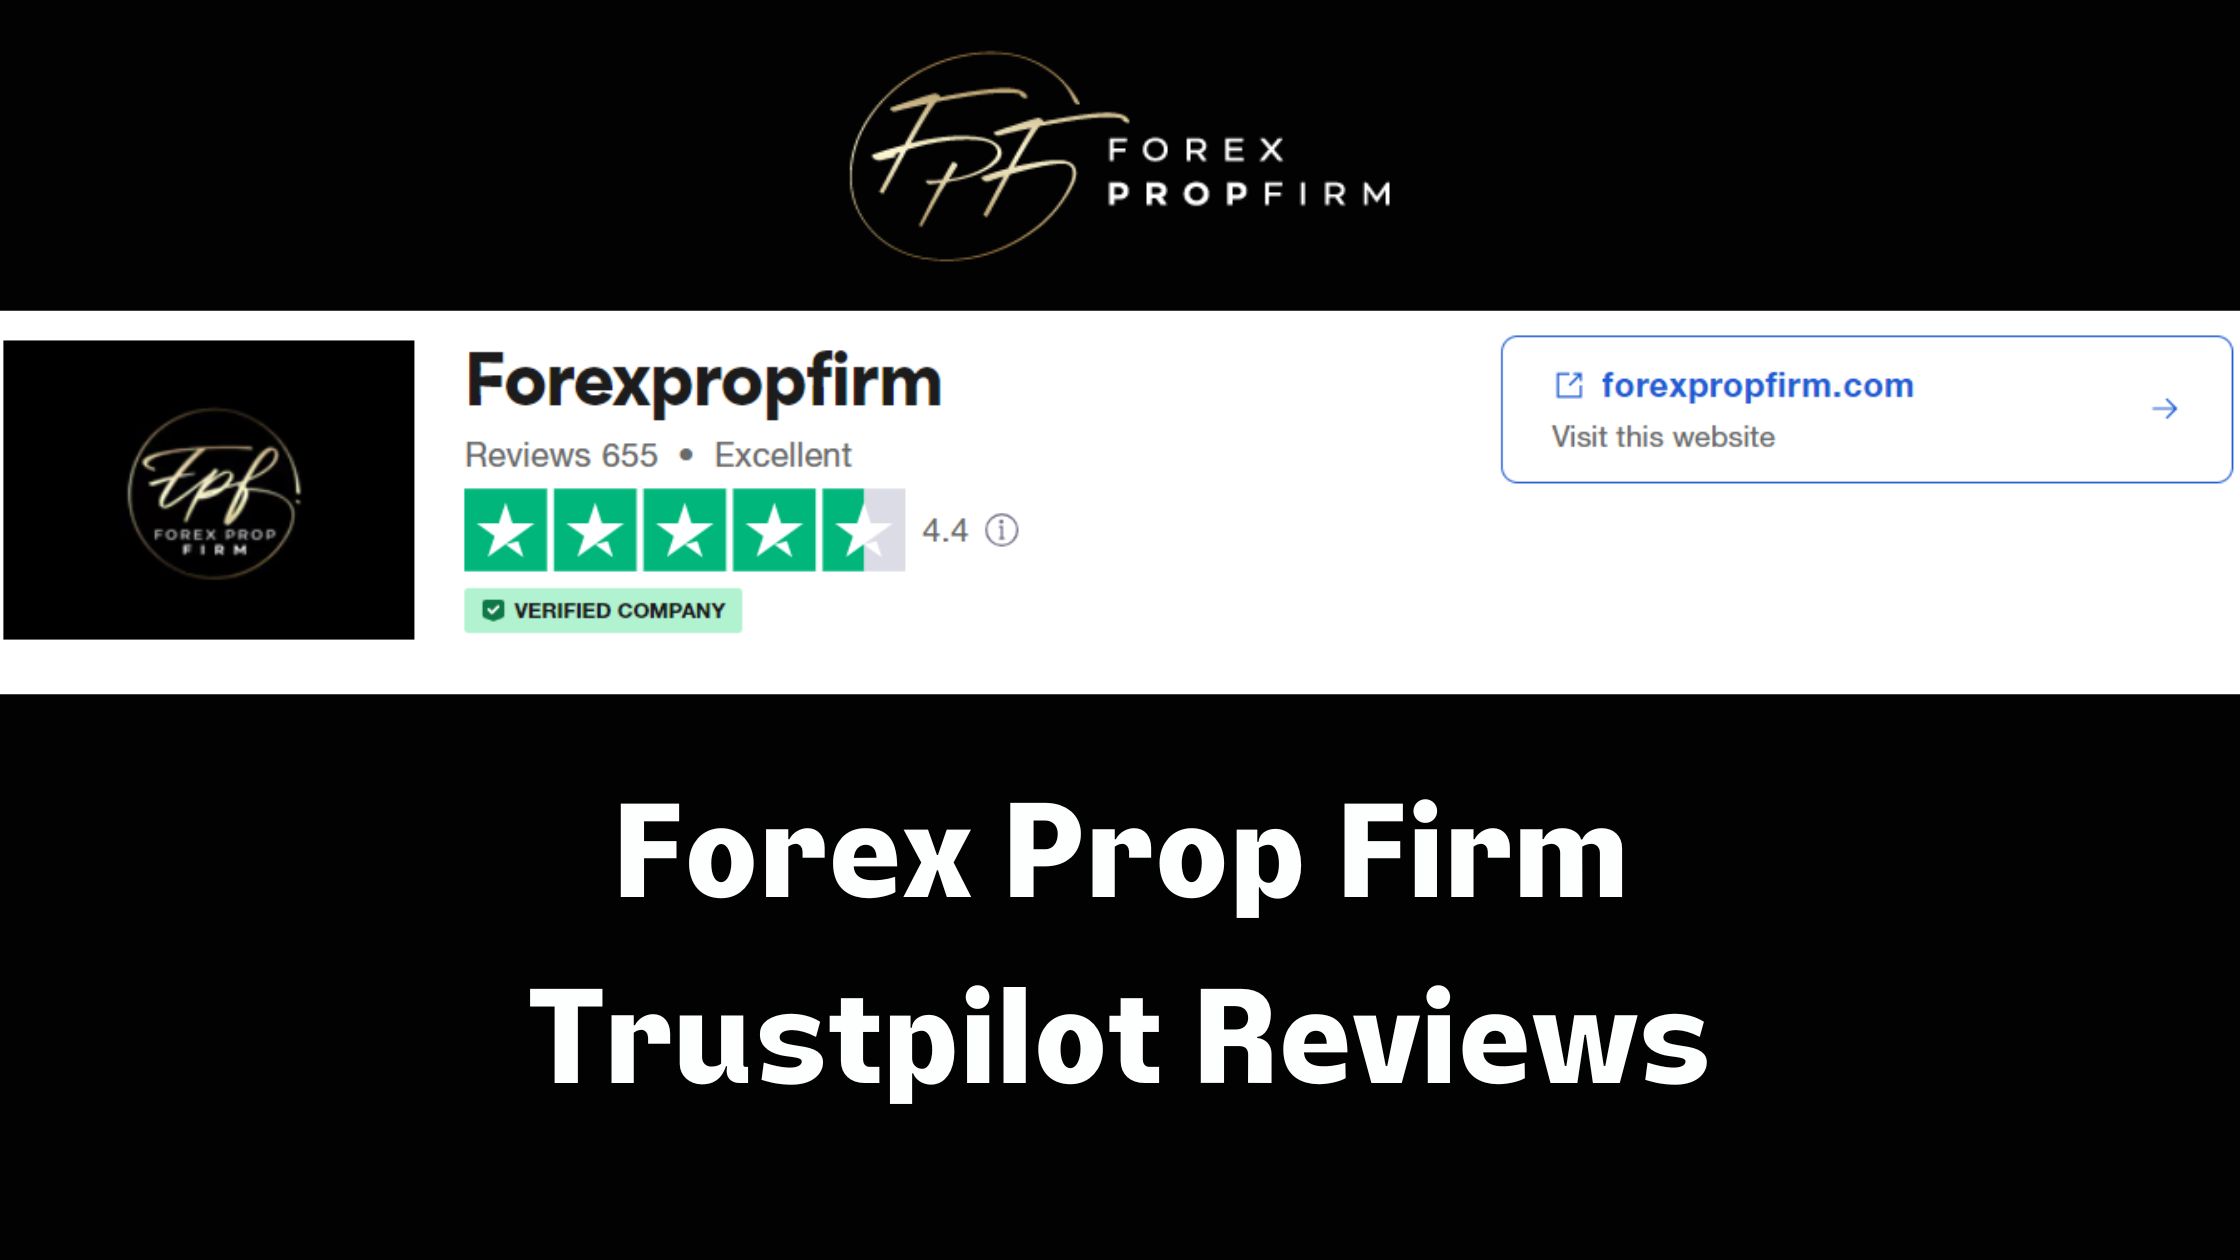 Forex Prop Firm Trustpilot Reviews